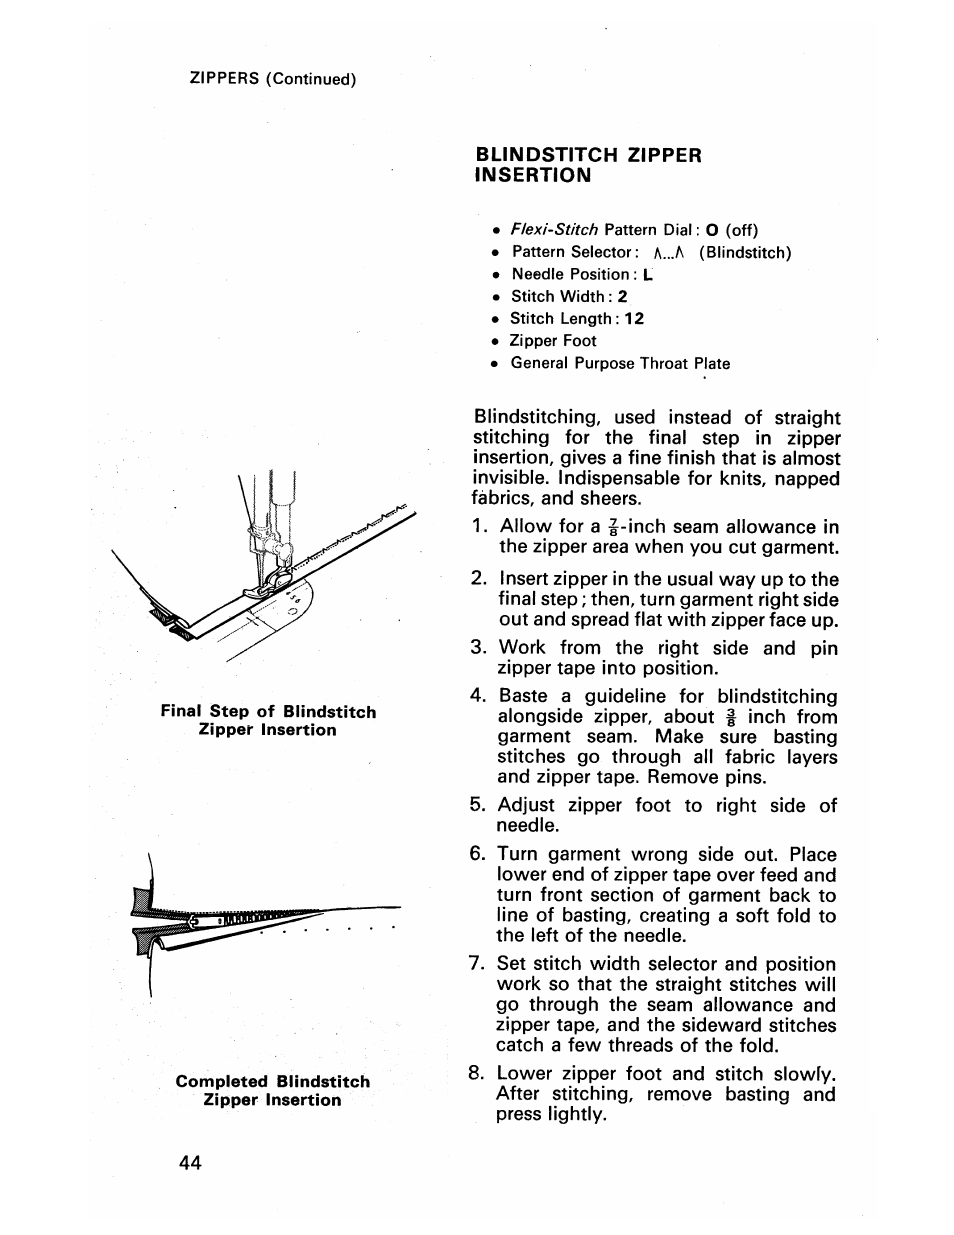 Blindstitch zipper insertion | SINGER 413 User Manual | Page 46 / 64